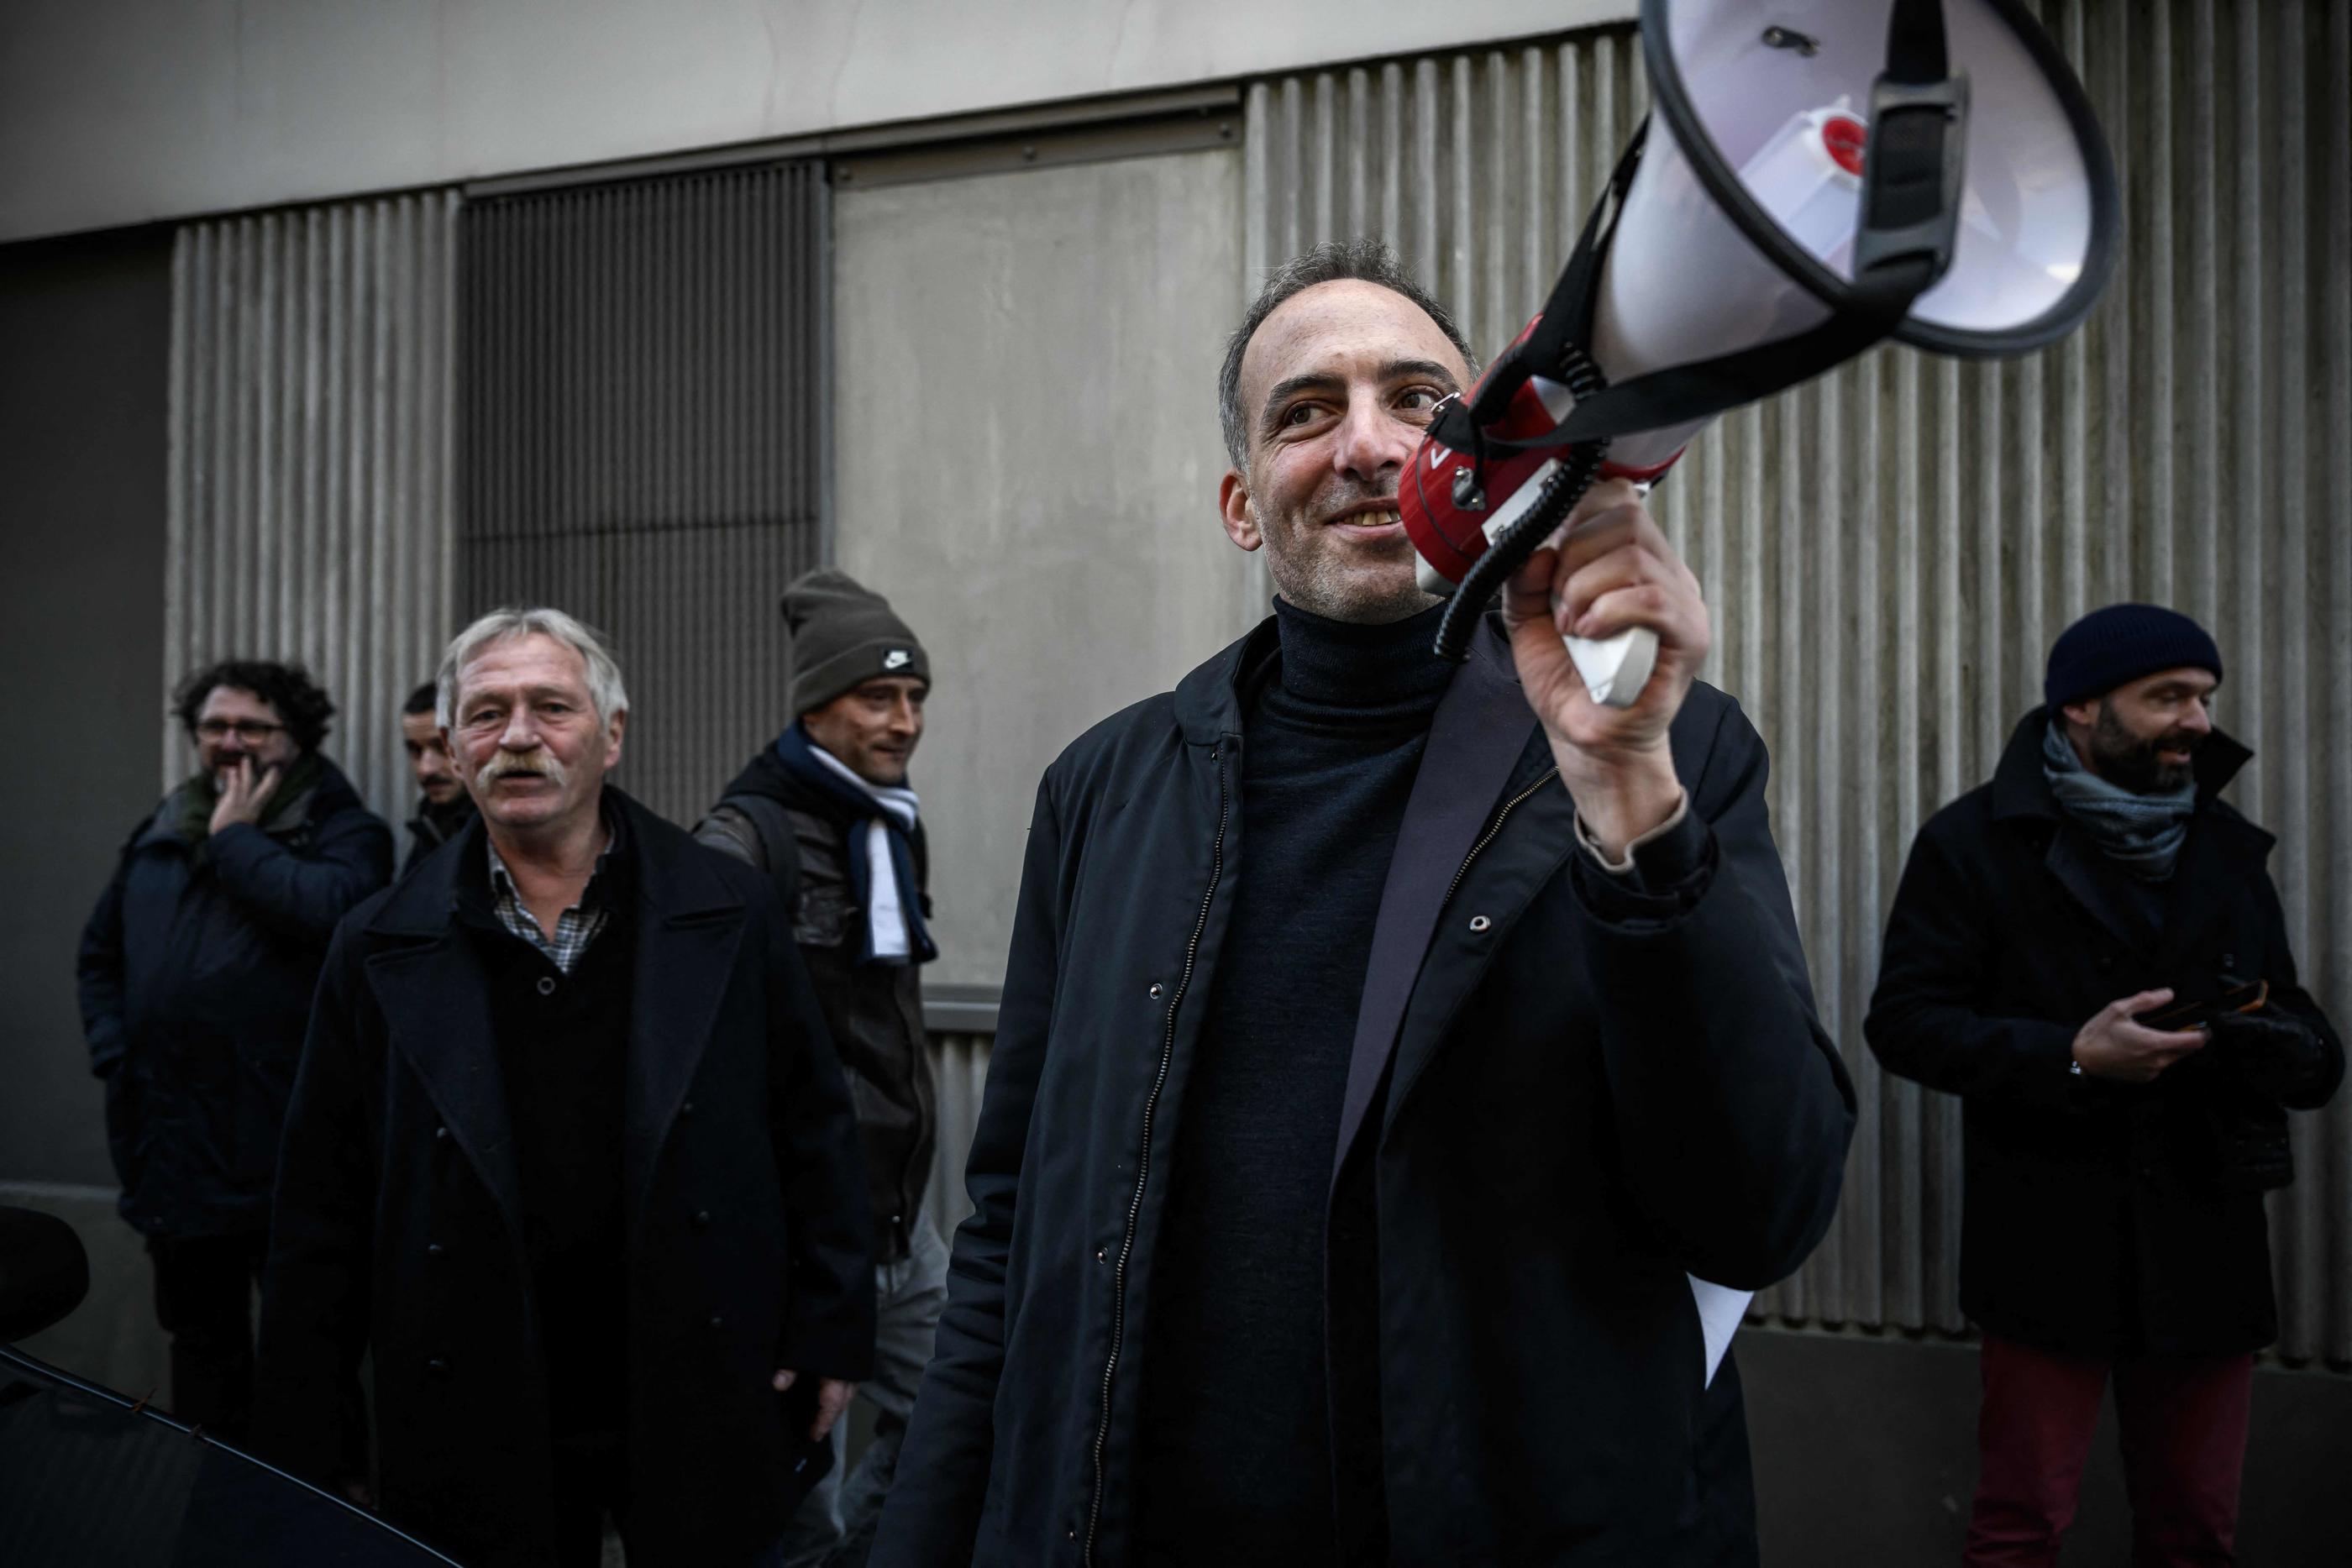 José Bové et Raphaël Glucksmann ce samedi à Bordeaux, lors d'un meeting improvisé pour ceux qui n'avaient pu entrer dans le lieu prévu en raison de l'affluence. AFP/Philippe Lopez